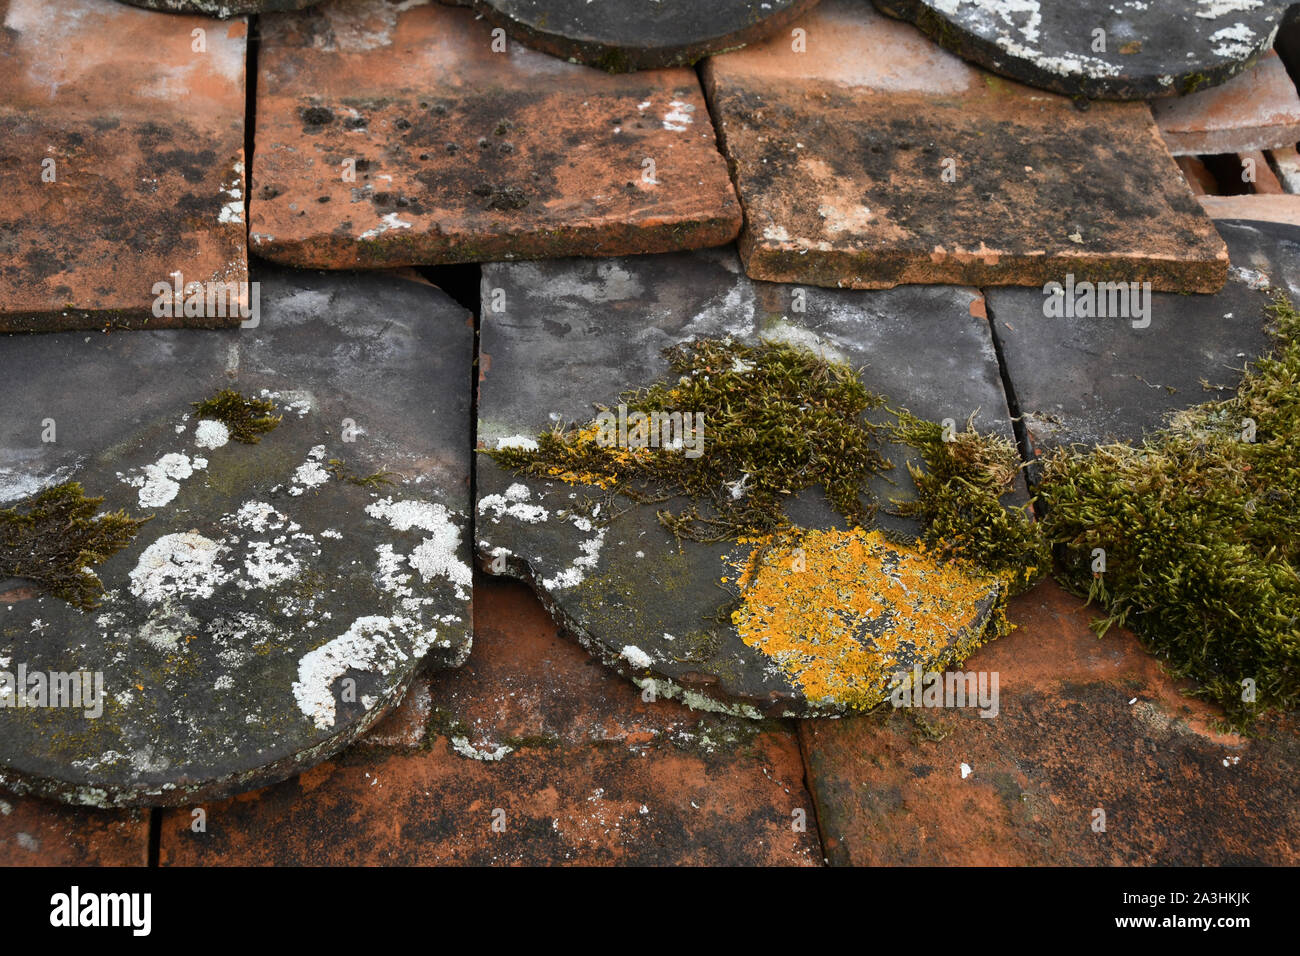 Interessante tetto vittoriano mattonelle rivestite con muschi e licheni in un inglese west country architectural salvage yard. Foto Stock